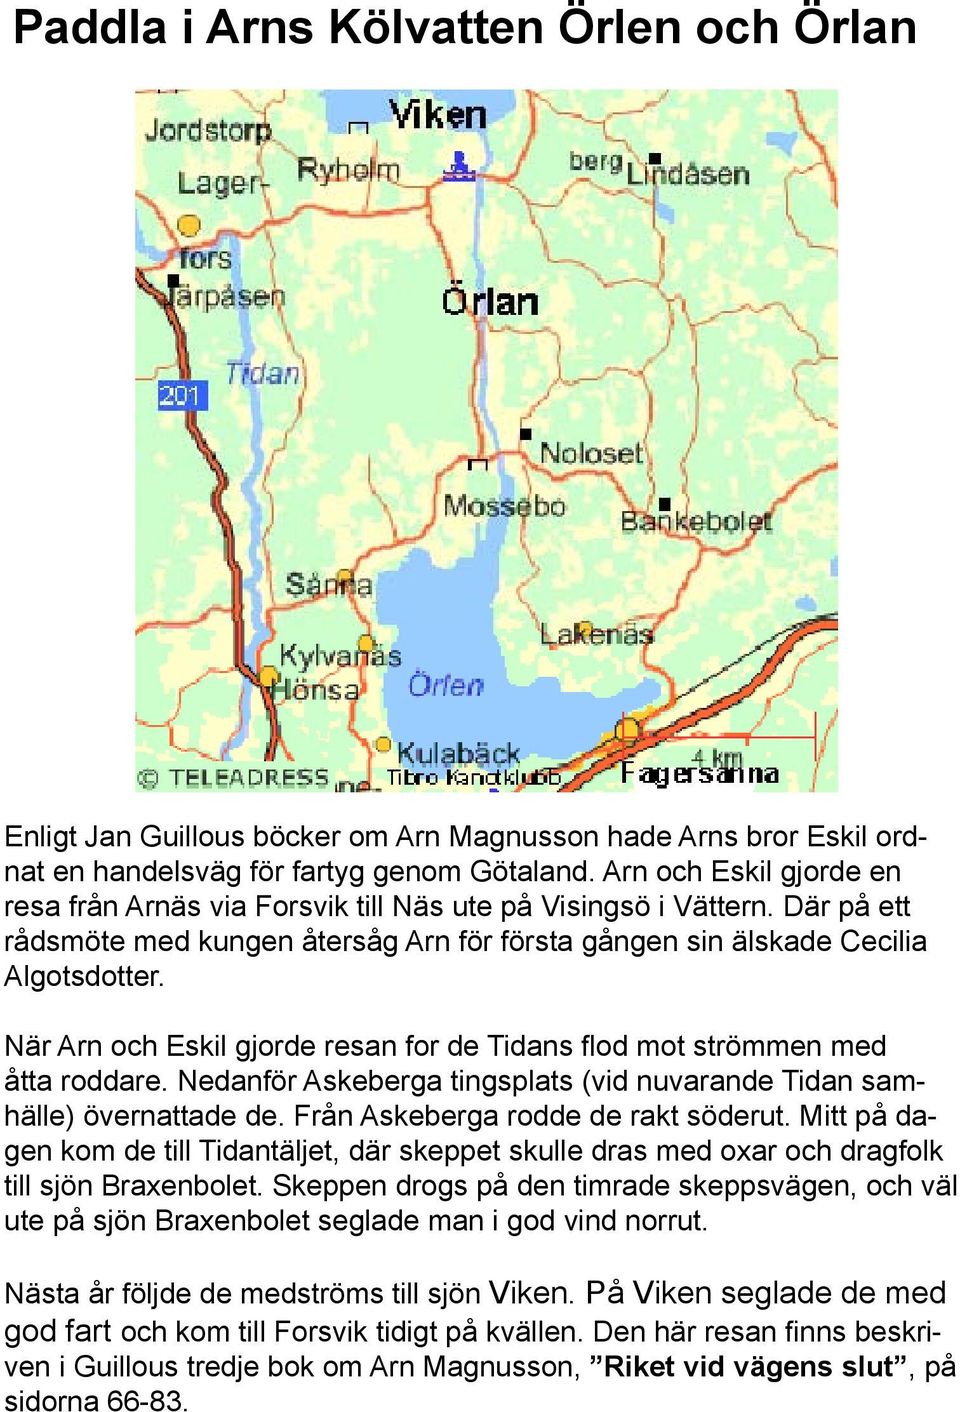 När Arn och Eskil gjorde resan for de Tidans flod mot strömmen med åtta roddare. Nedanför Askeberga tingsplats (vid nuvarande Tidan samhälle) övernattade de. Från Askeberga rodde de rakt söderut.